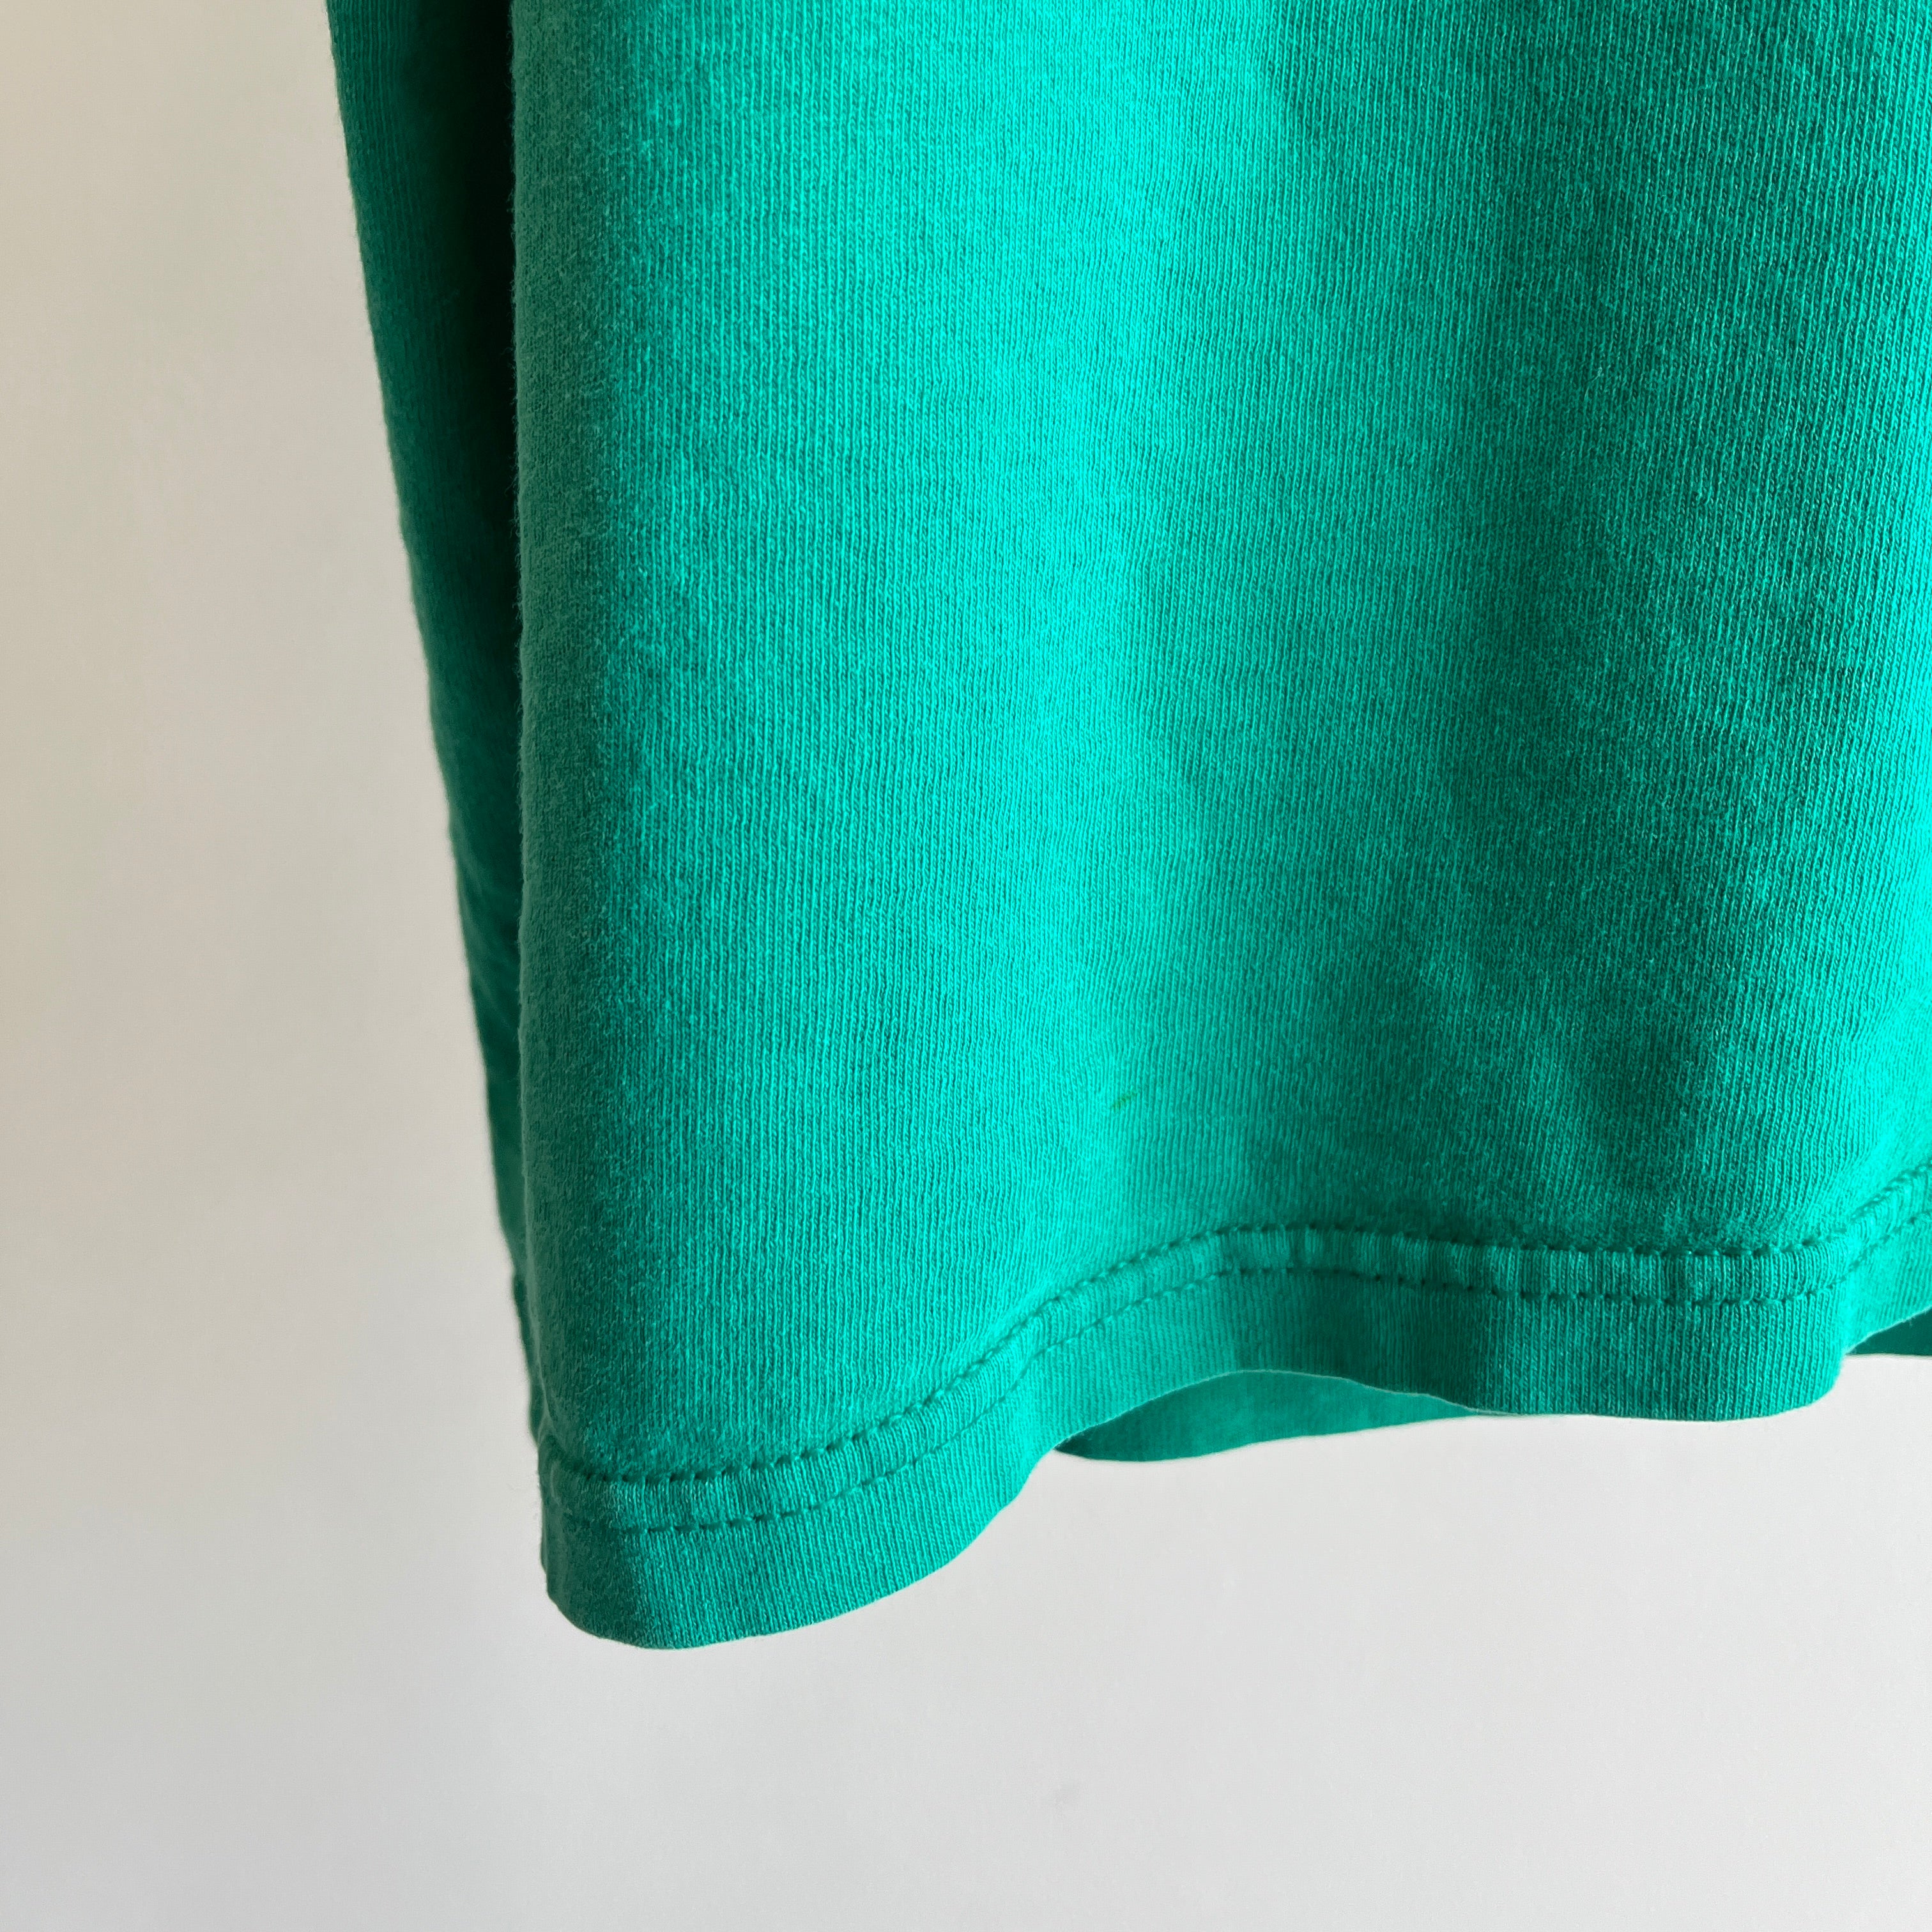 Vêtements officiels des Jeux olympiques des années 1990 Débardeur en coton vert/bleu sarcelle légèrement lambeaux